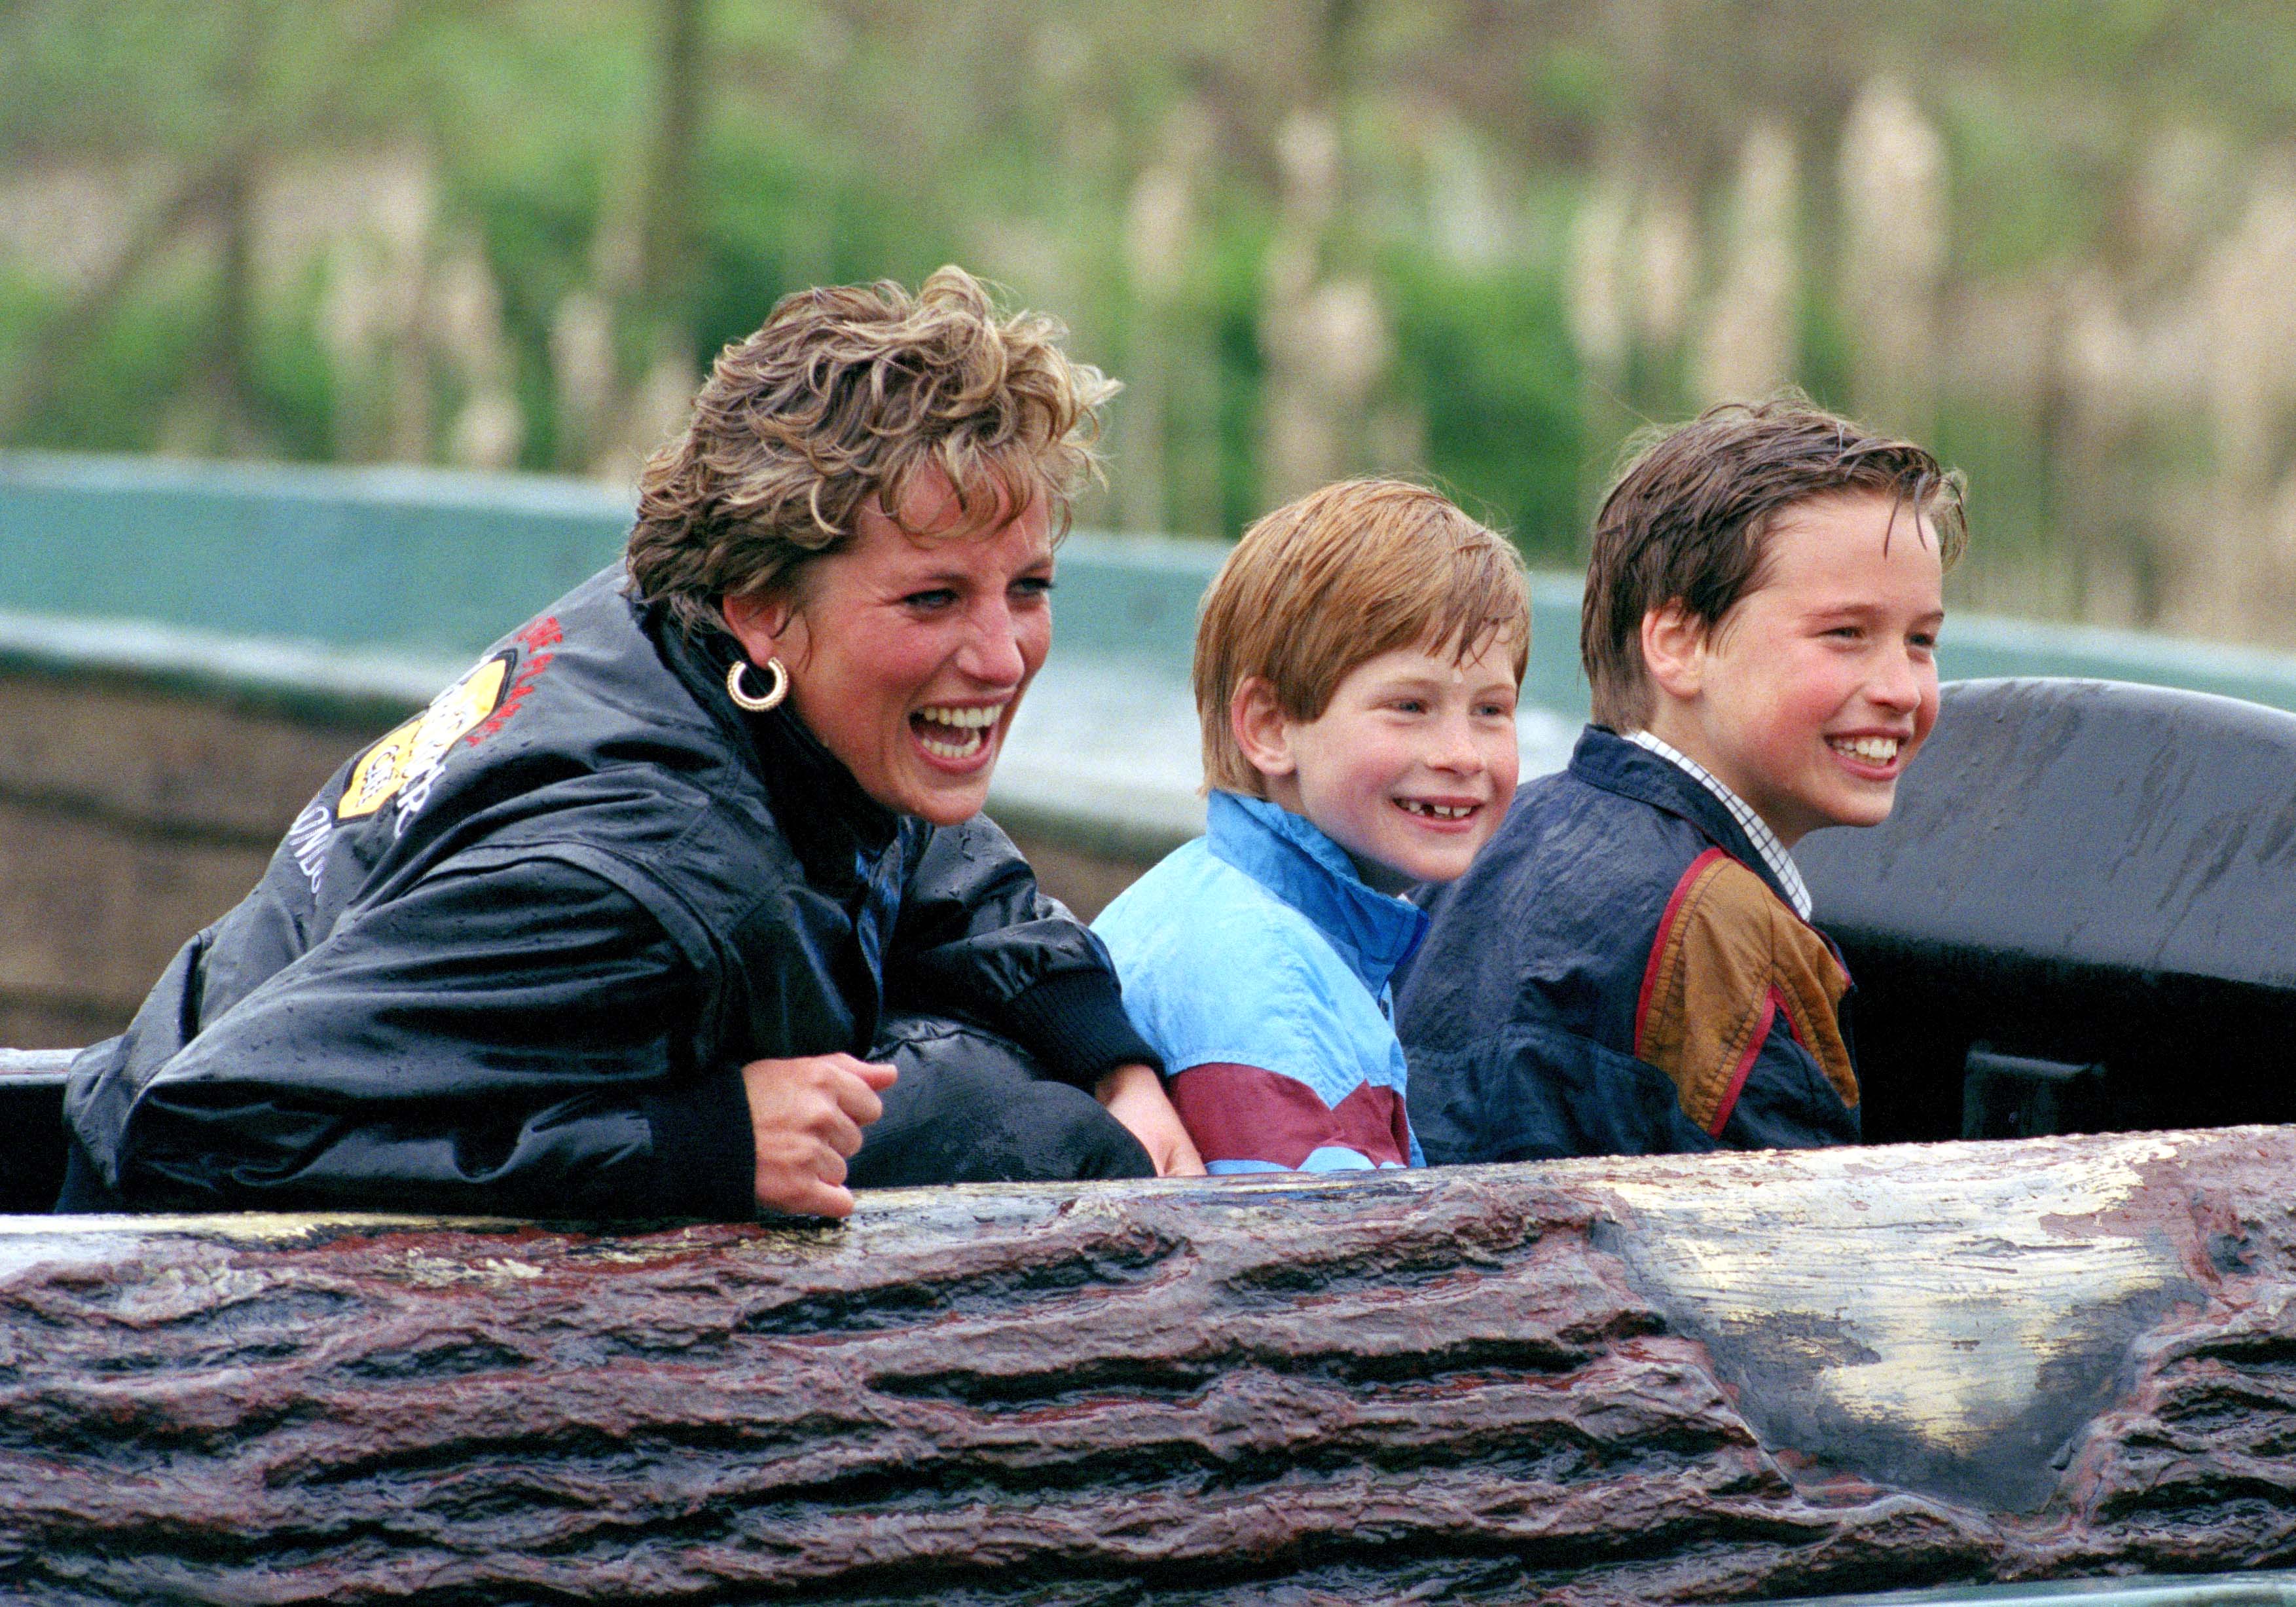 La princesa Diana de Gales, el príncipe William y el príncipe Harry visitan el parque de atracciones 'Thorpe Park'. | Foto: Getty Images